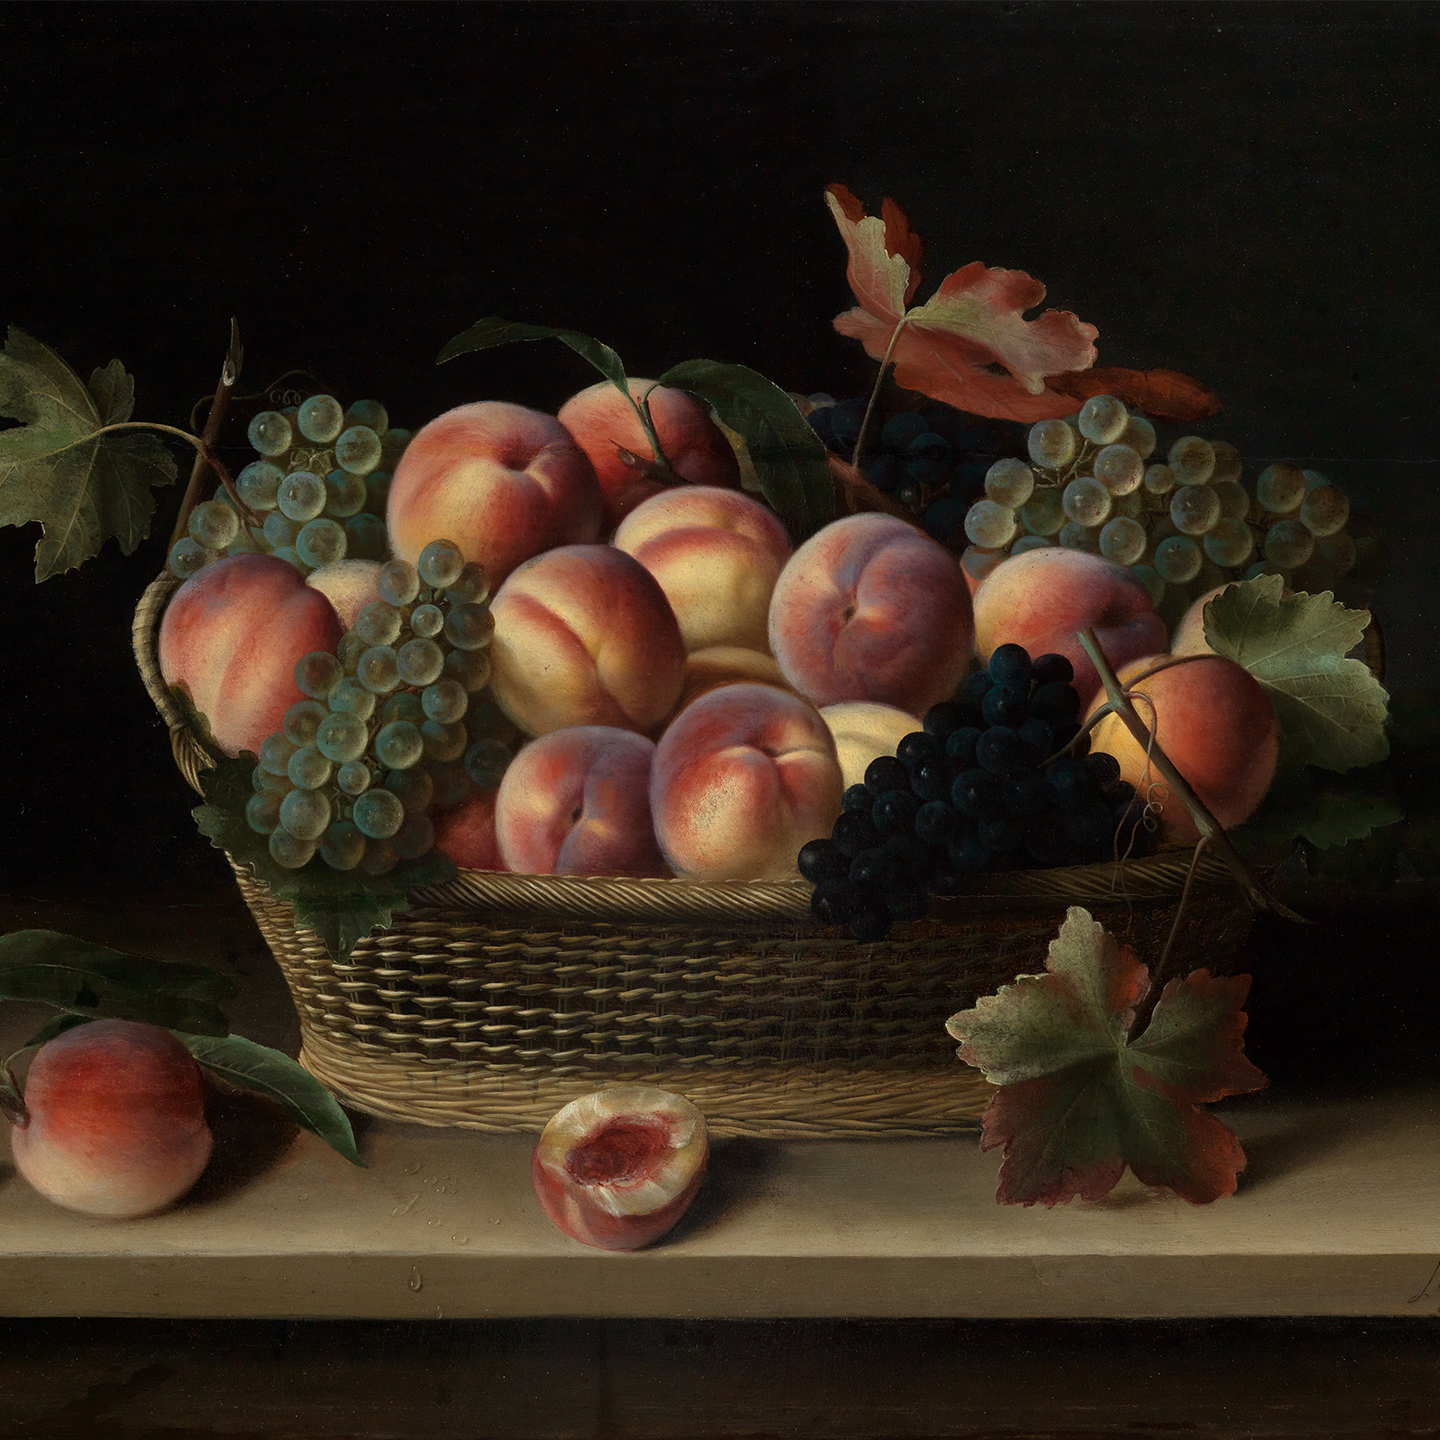 Abbildung eines Gemäldes, das einen Korb vor dunklem Hintergrund zeigt. In dem Korb liegen Trauben und Pfirsiche. Zwei Pfirsiche liegen außerhalb des Korbes.